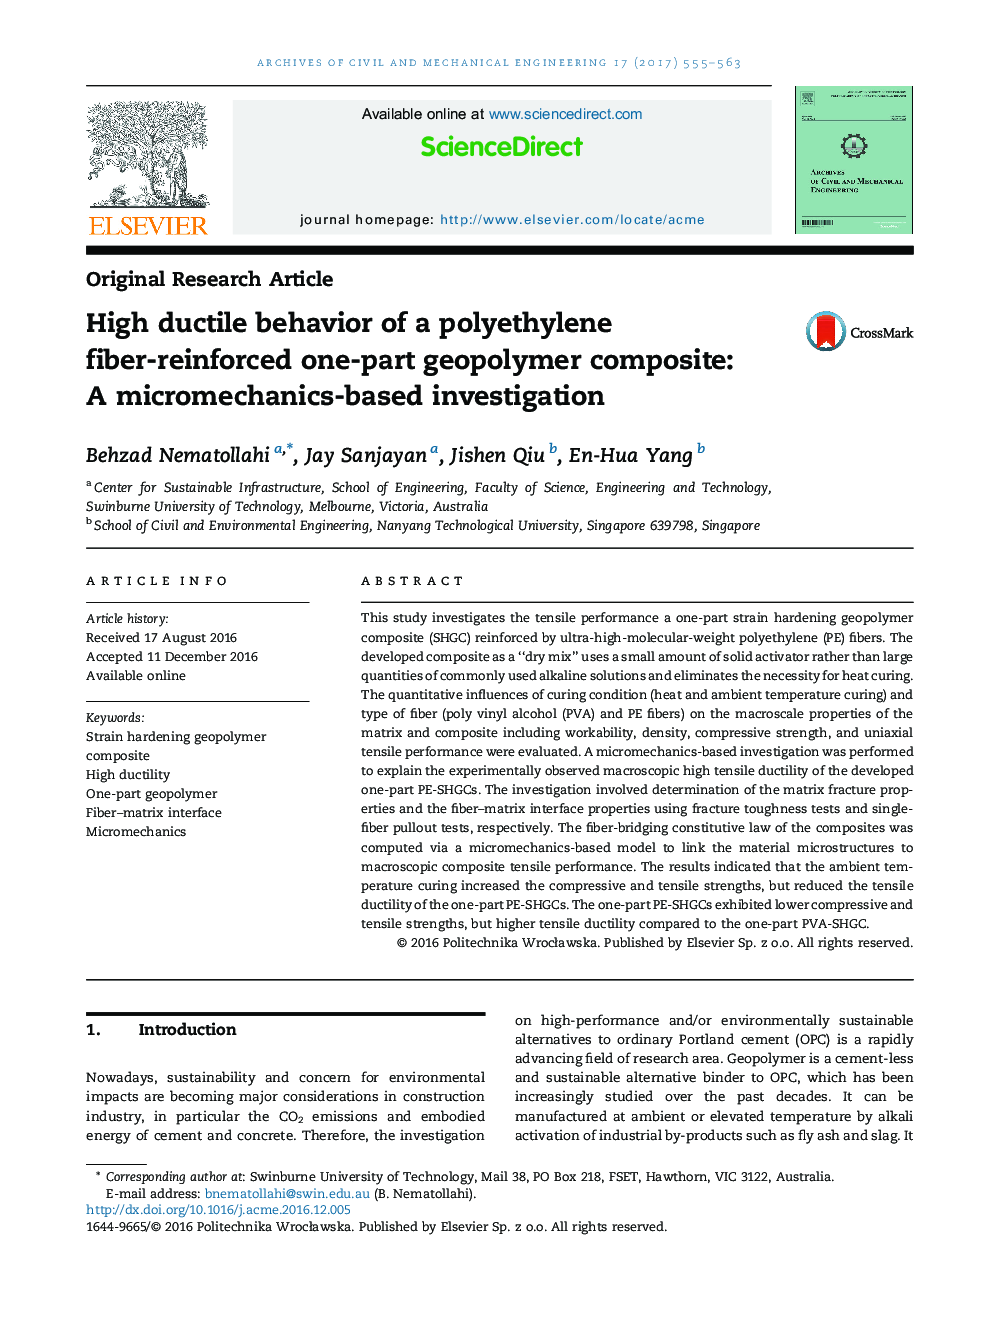 رفتار مجذور بالا یک کامپوزیت ژئوپلیمر یکپارچه تقویت شده با فیبر پلی اتیلن: یک تحقیق مبتنی بر میکرومکانیکی 